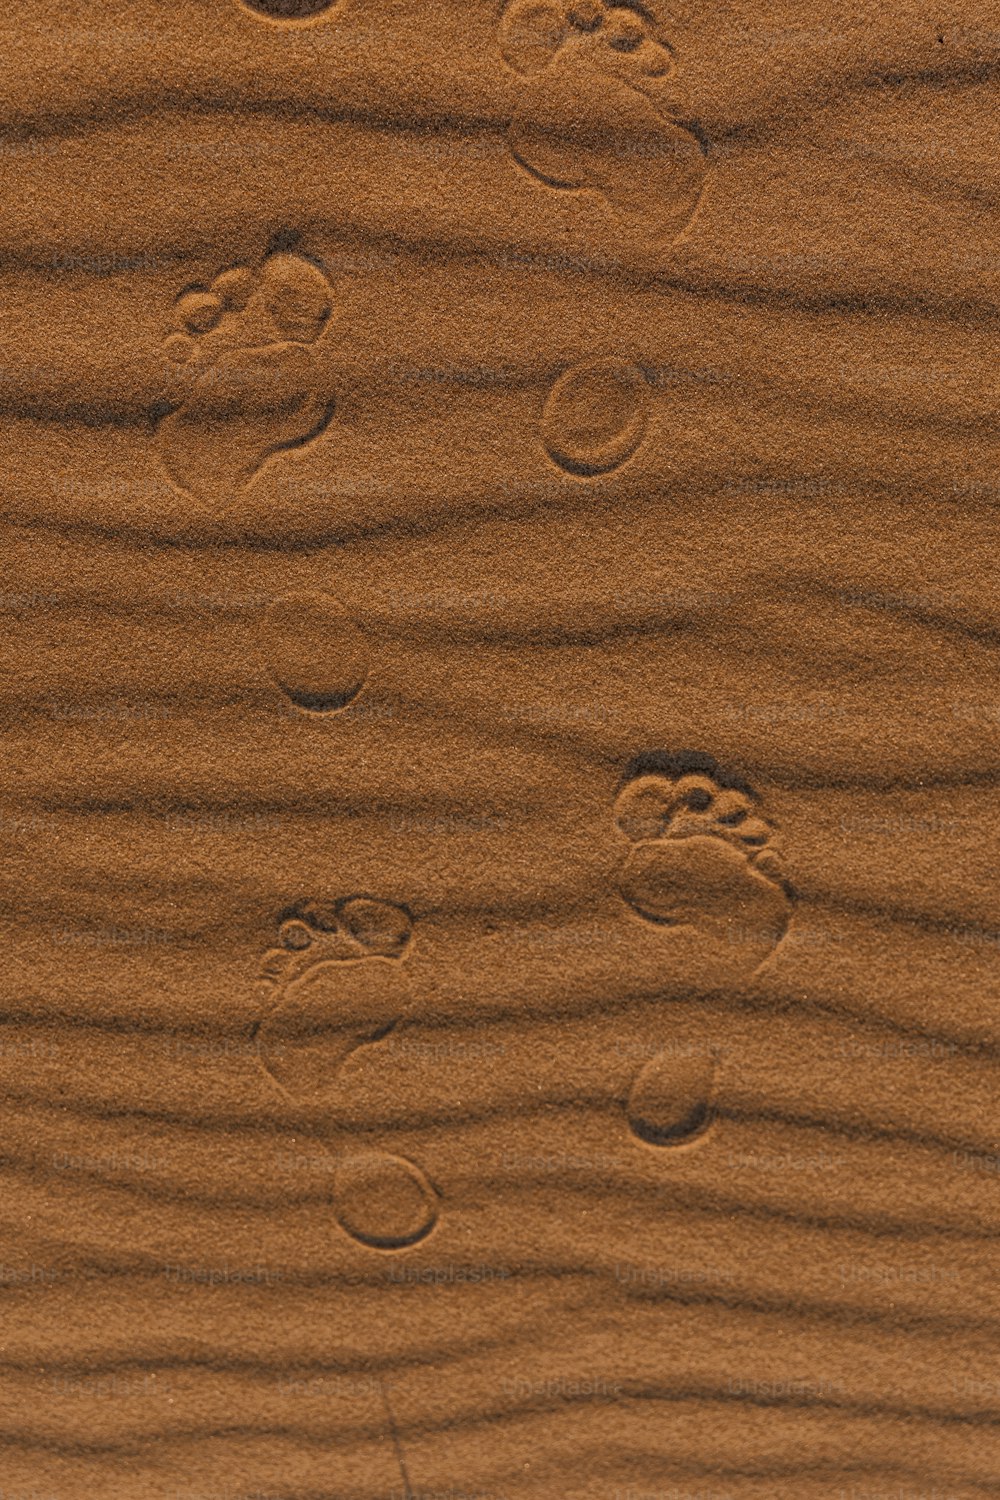 ビーチの砂の中の足跡